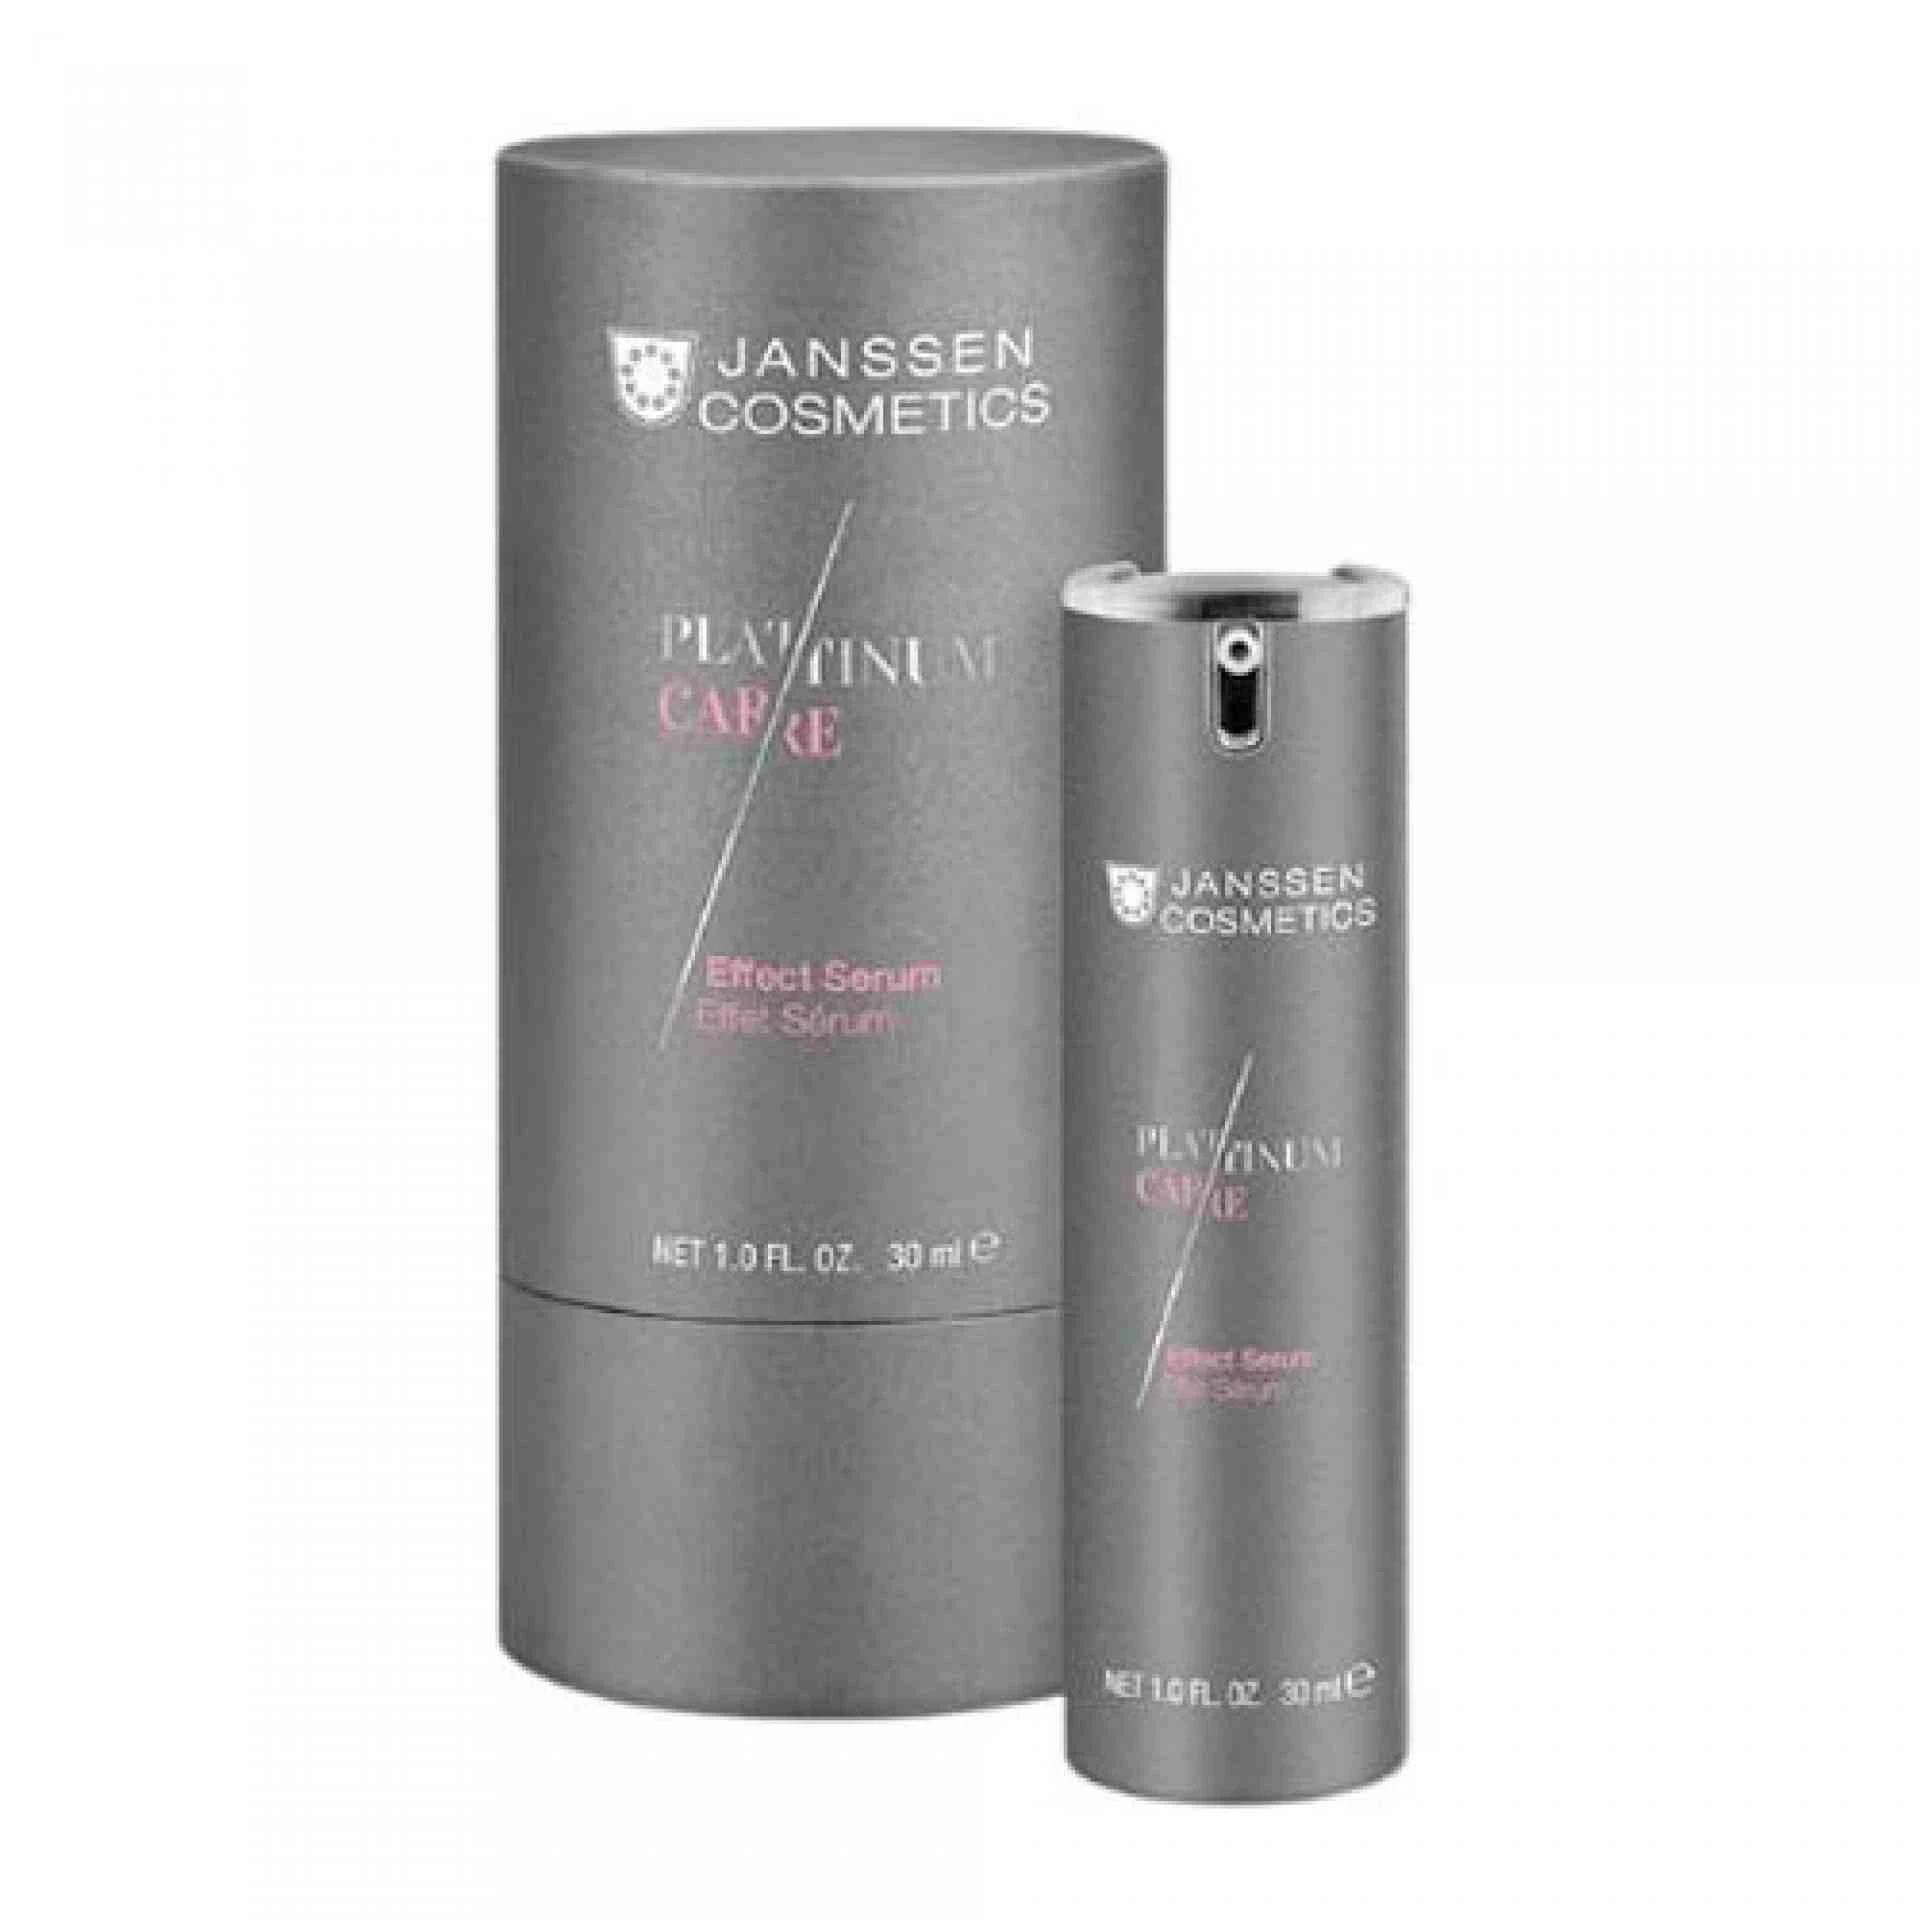 Platinum Care Effect Serum 30ml Janssen Cosmetics®